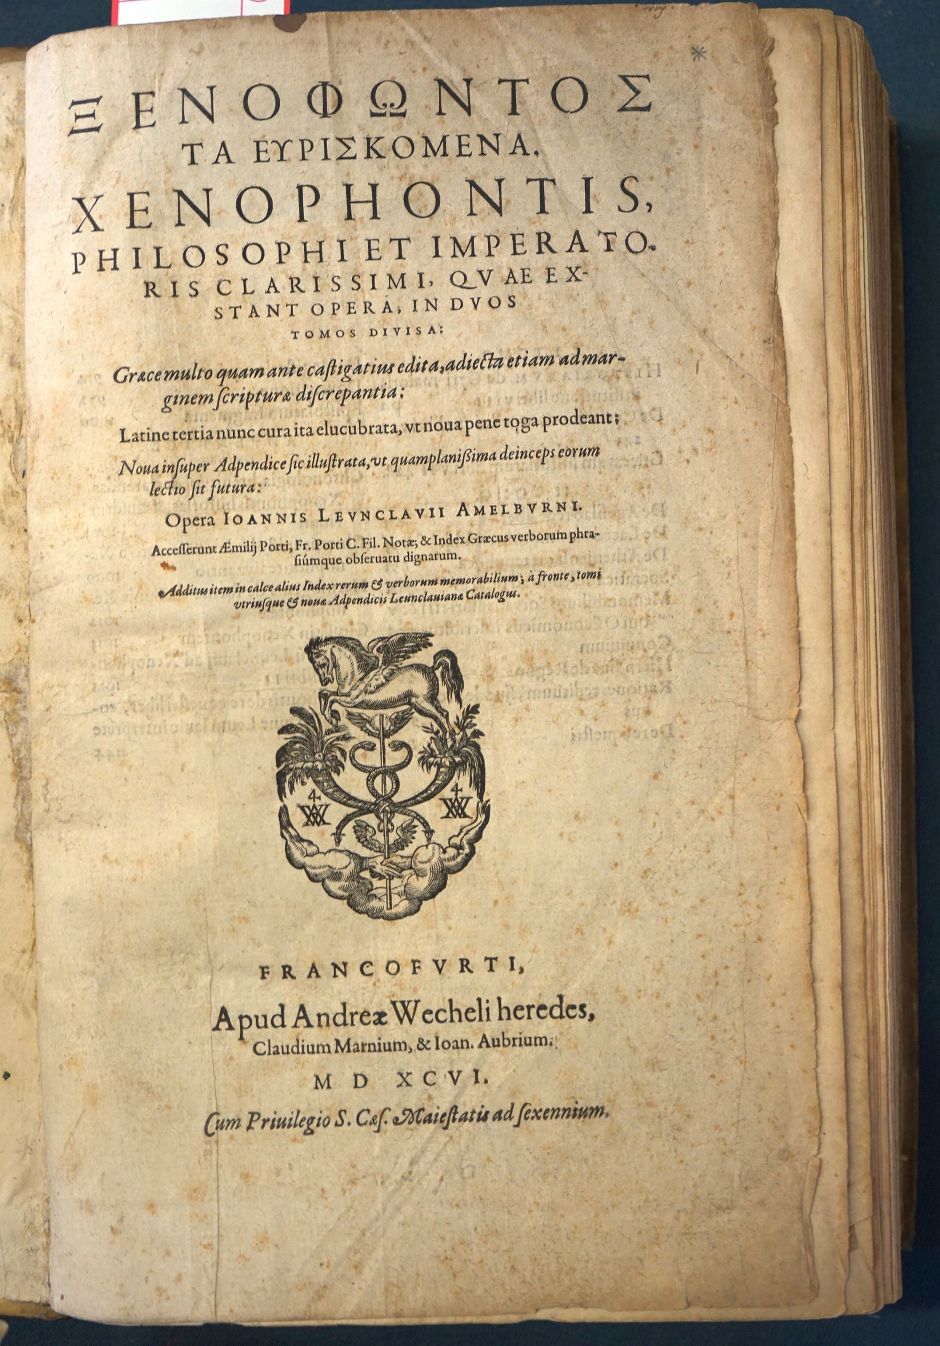 Lot 1218, Auction  115, Xenophon, Philosophi et imperatoris clarissimi